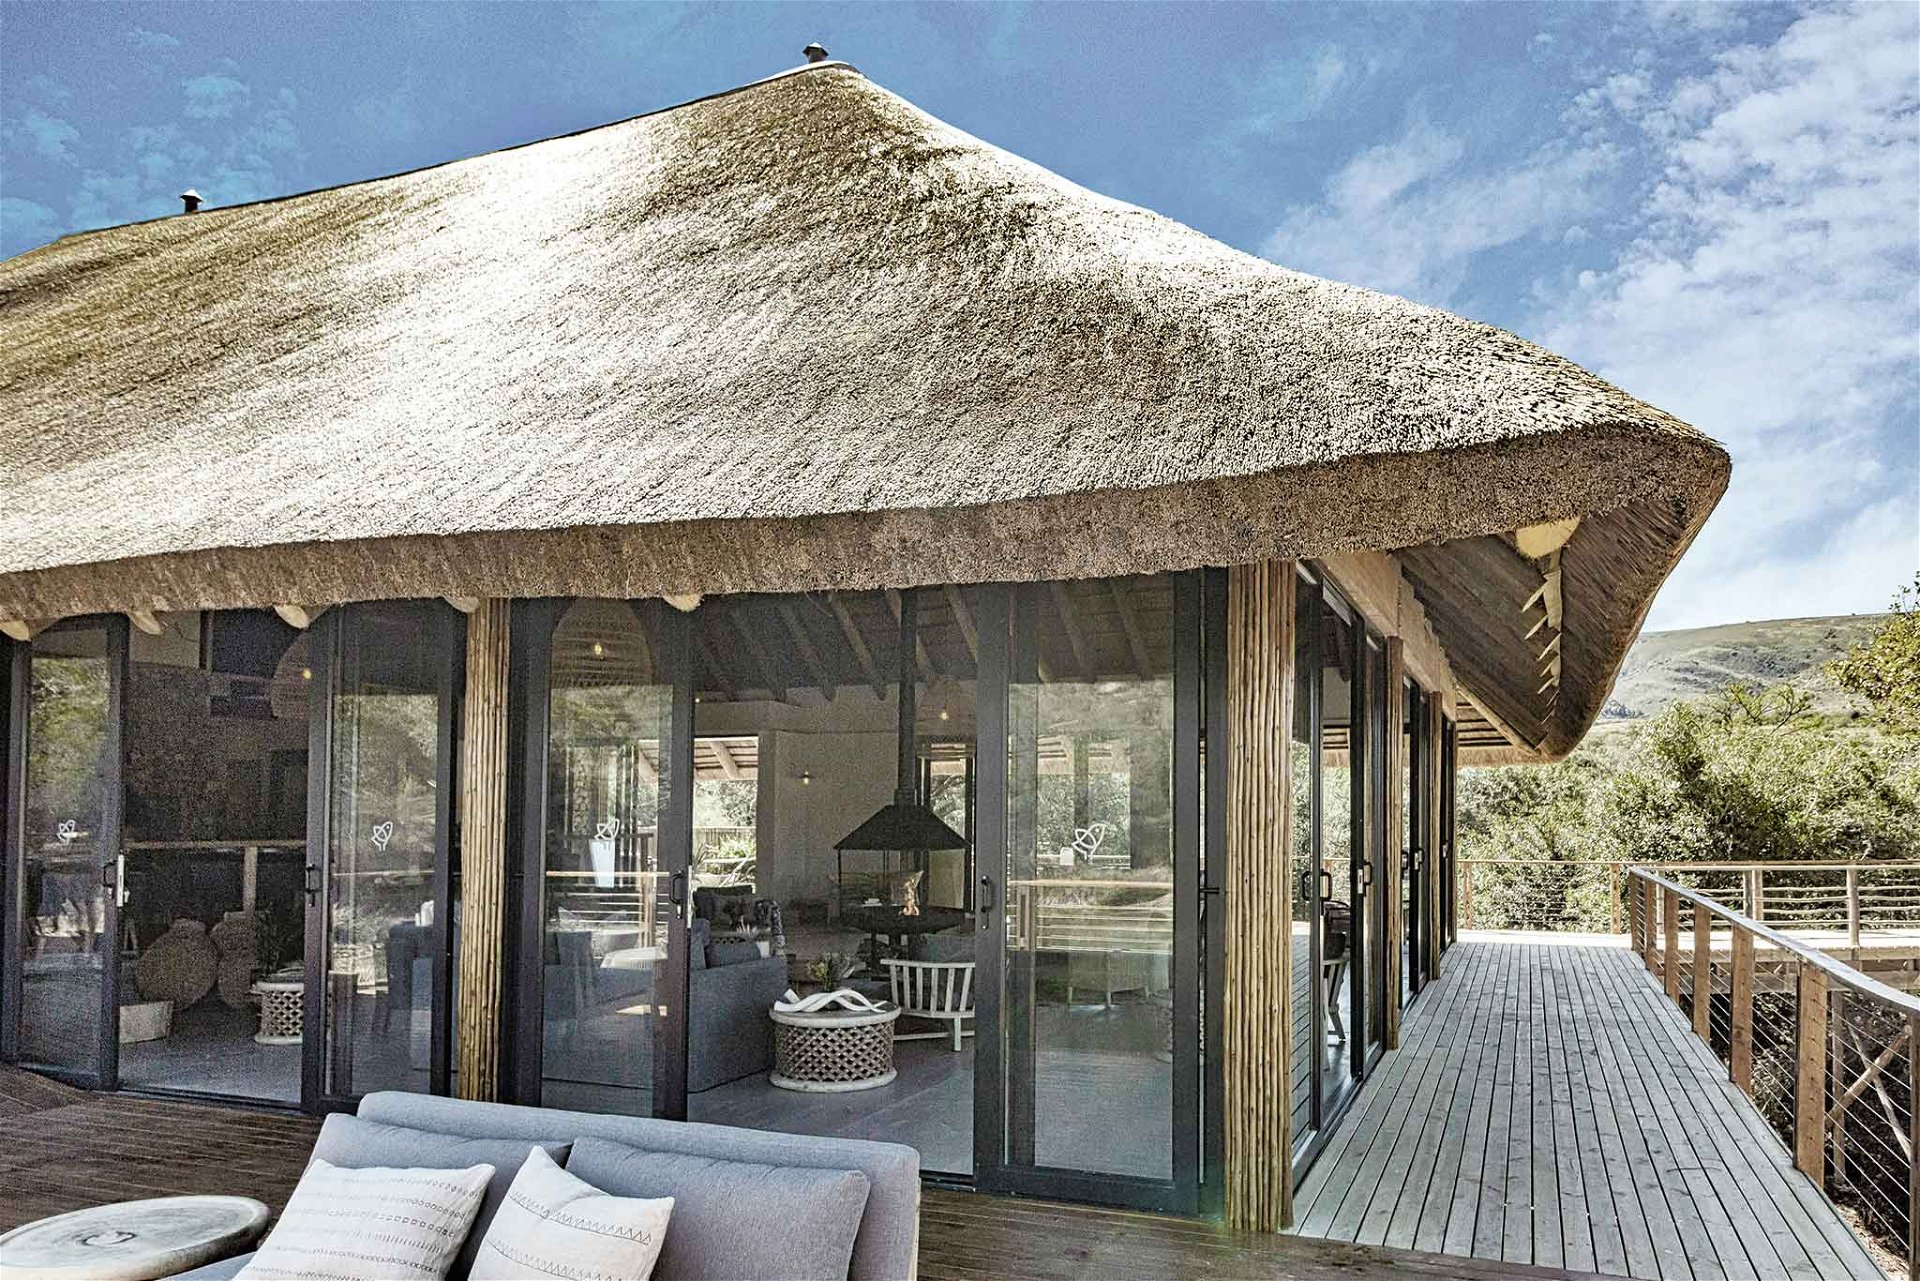 Inmitten eines Nationalparks im Osten Südafrikas: die im November 2019 eröffnete, von Schweiger gestaltete »Barefoot Addo Elephant Lodge«. barefootaddo.co.za